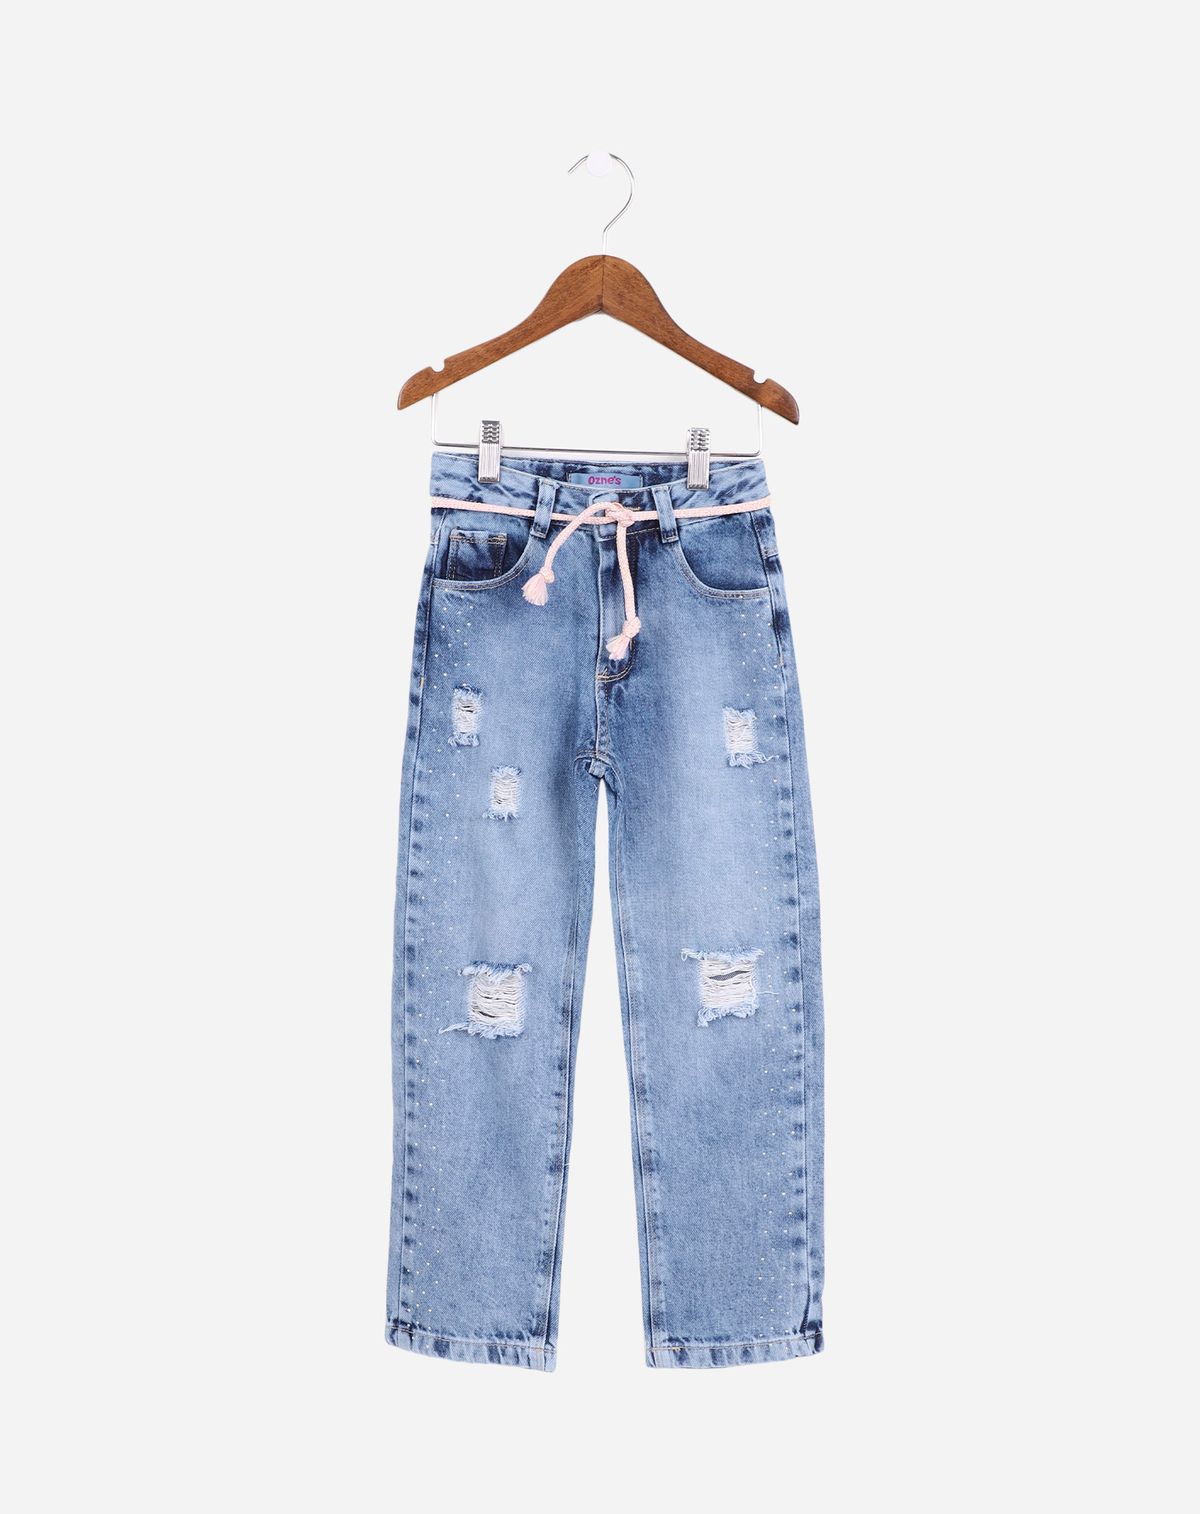 Calça Reta Infantil Menina Cordão Amarração - Tam. 4 a 8 Anos jeans - 4